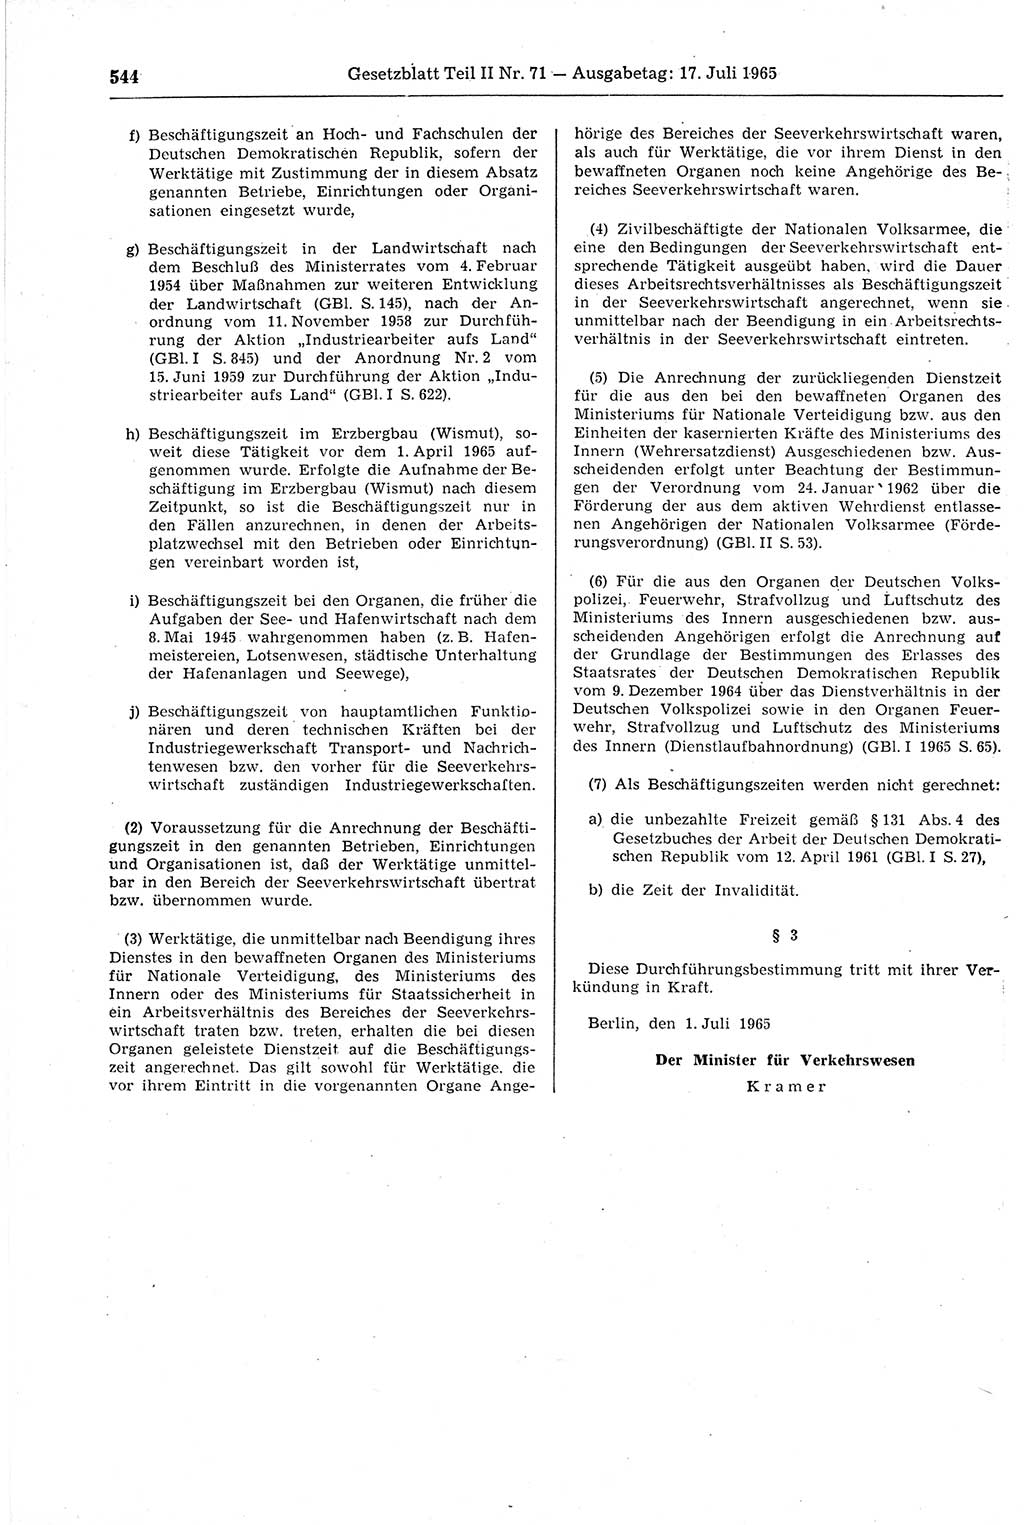 Gesetzblatt (GBl.) der Deutschen Demokratischen Republik (DDR) Teil ⅠⅠ 1965, Seite 544 (GBl. DDR ⅠⅠ 1965, S. 544)